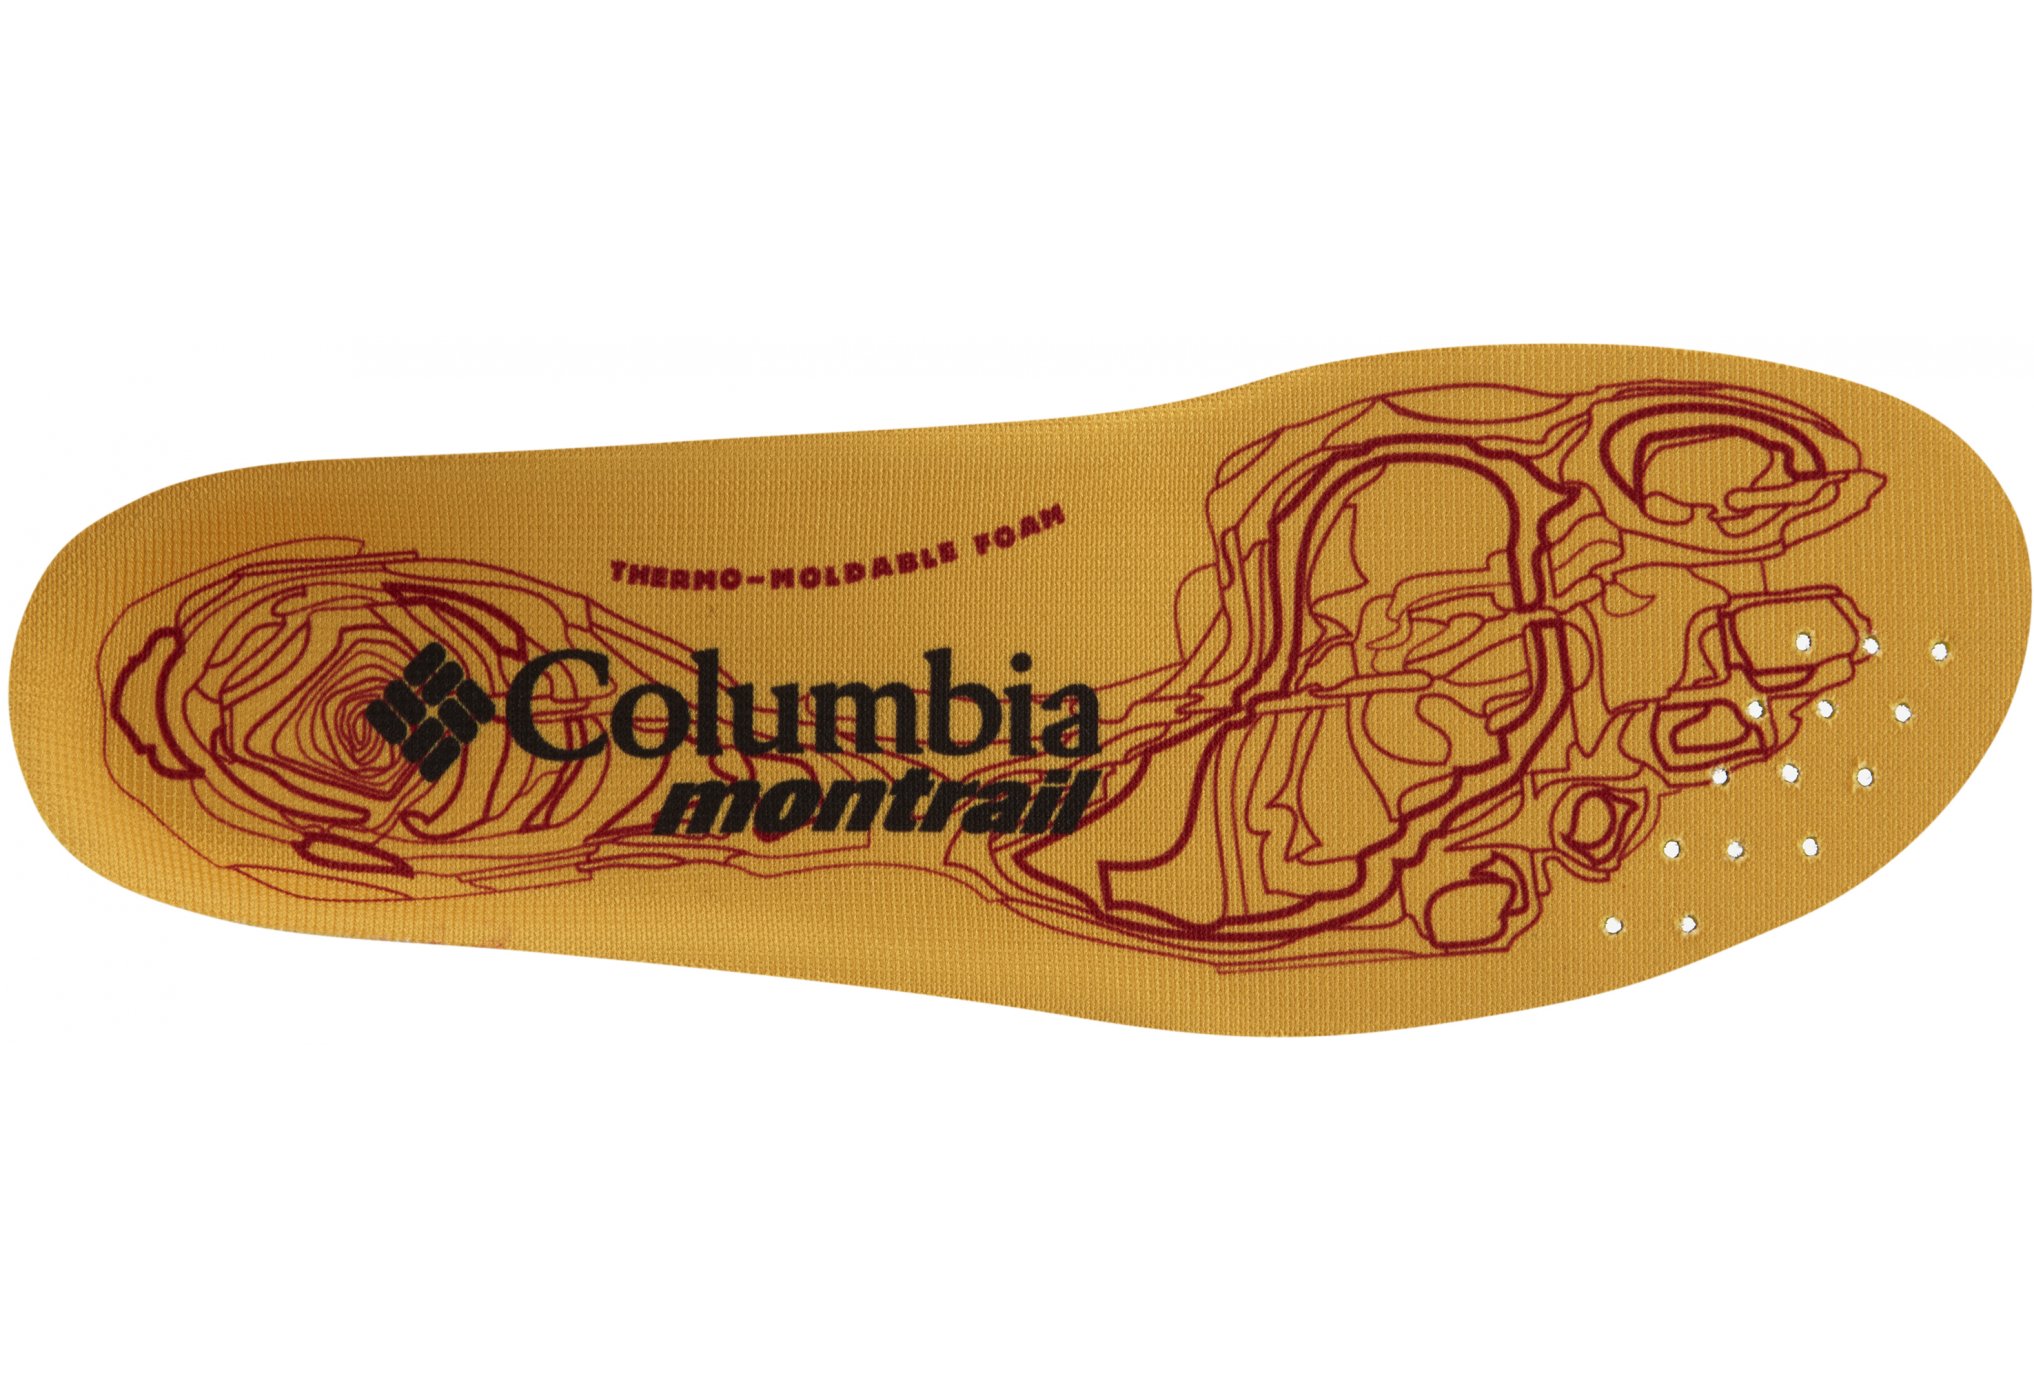 Columbia Montrail enduro-Sole lp lacets / gutres / semelles